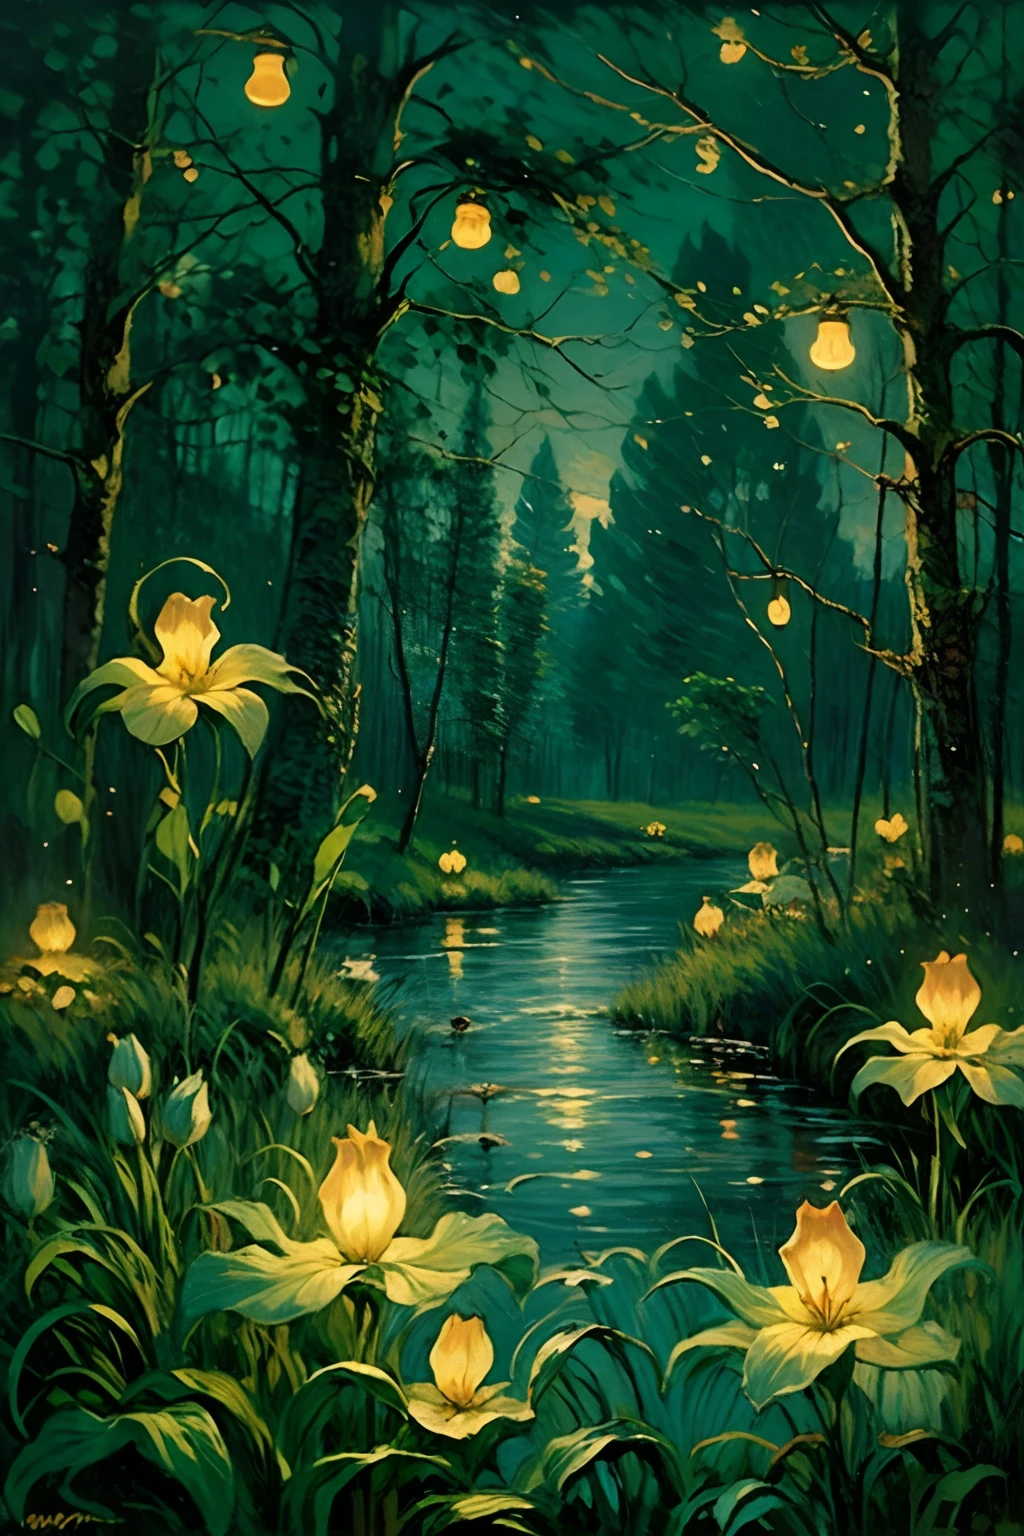 油画风景, 电影灯光, 对比照明, 夜晚的沼泽, 萤火虫, 鬼魂, 蜡烛在空中飞舞, 异想天开, 神奇, 旧复古艺术, 交换百合